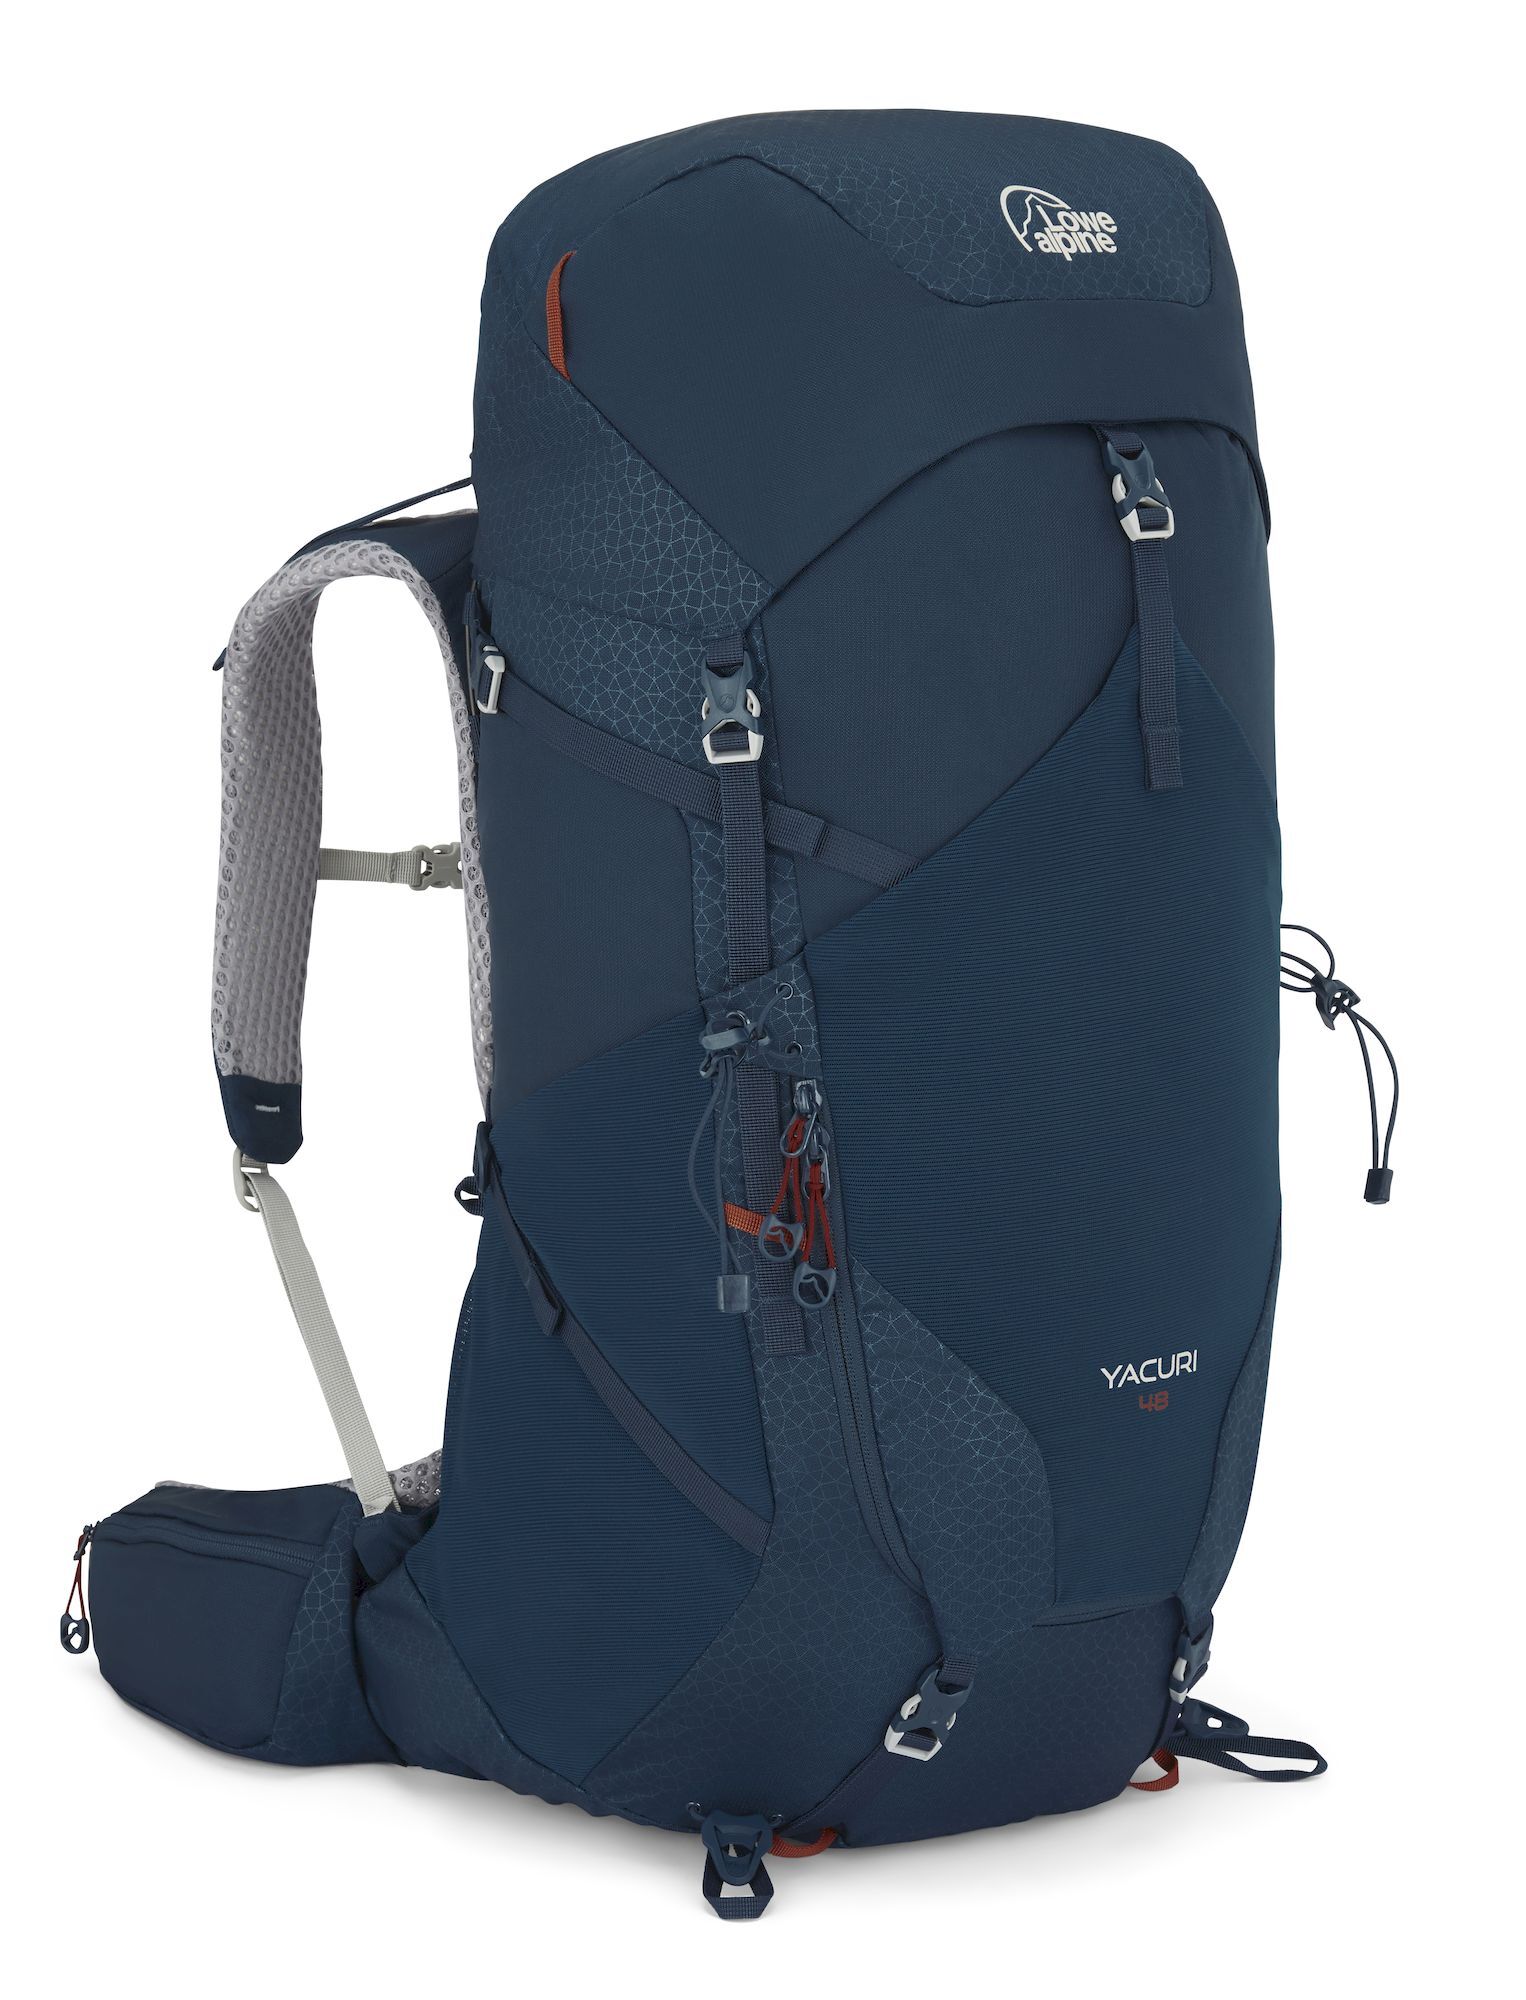 Lowe Alpine Yacuri 48 - Hiking backpack - Men's | Hardloop